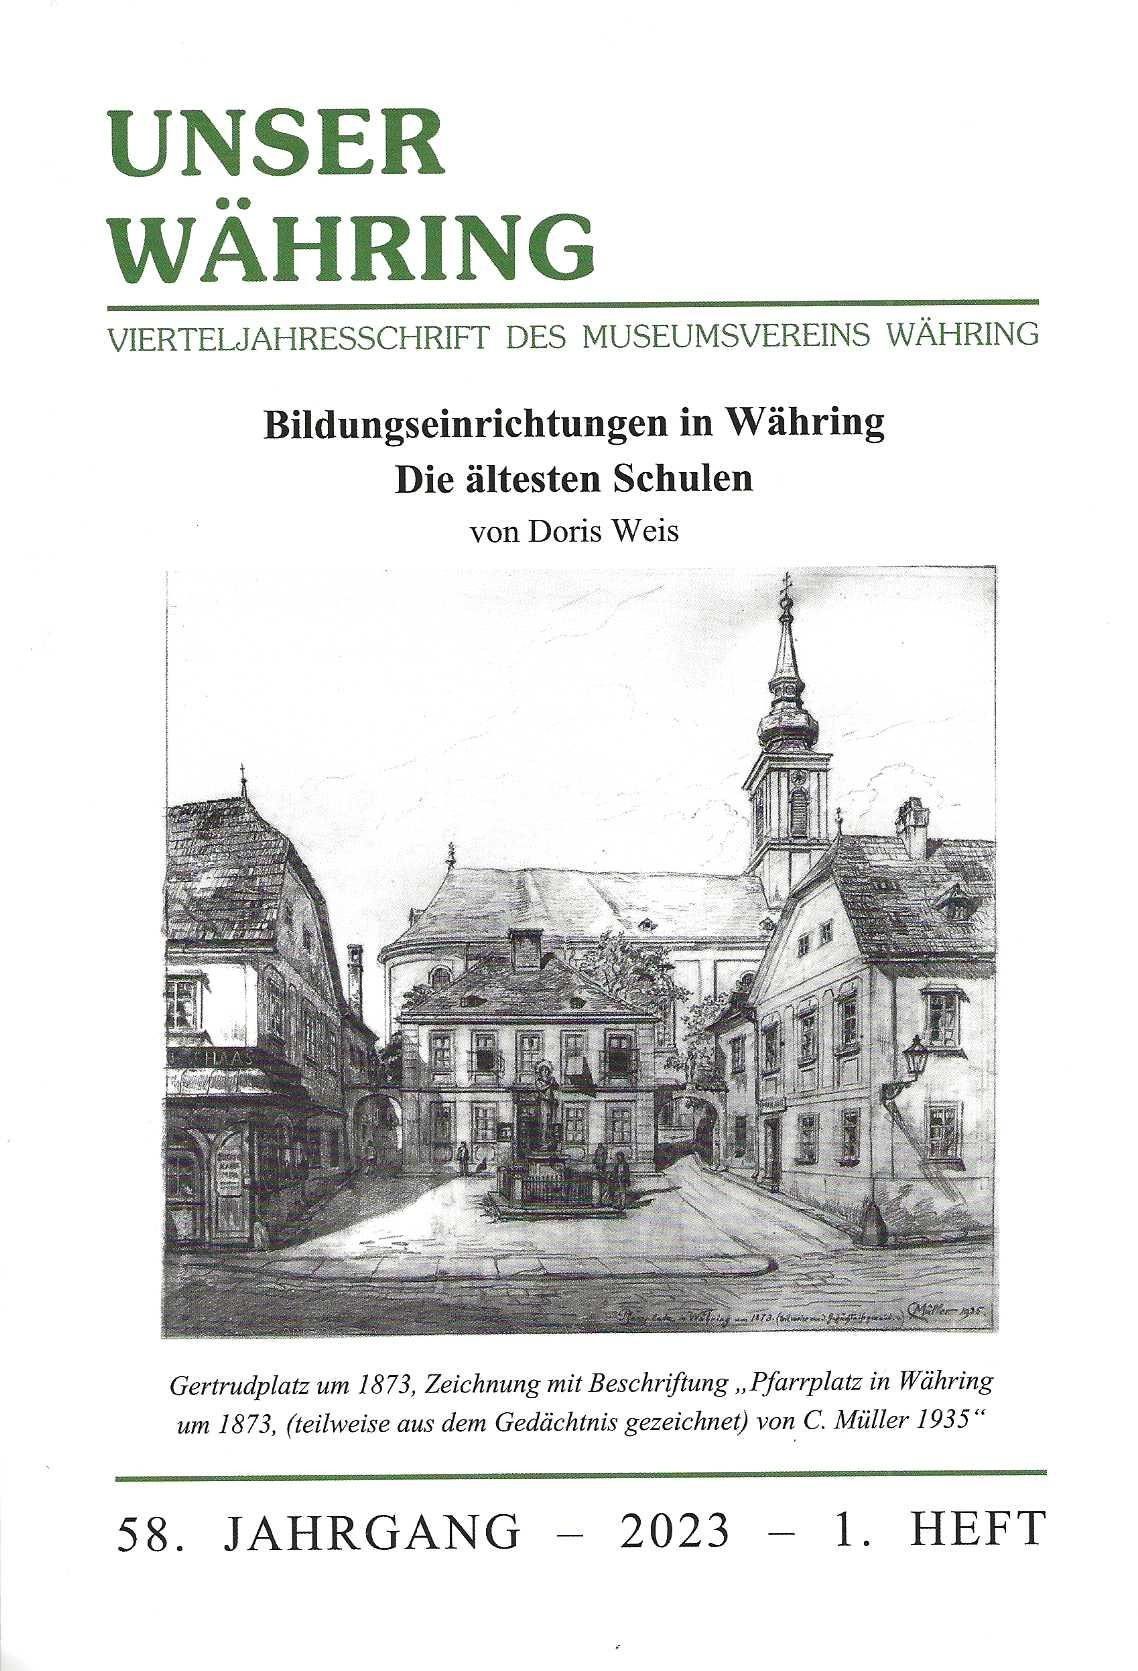 Publikation: Bildungseinrichtungen in Währing. Die ältesten Schulen, Bezirksmuseum Währing